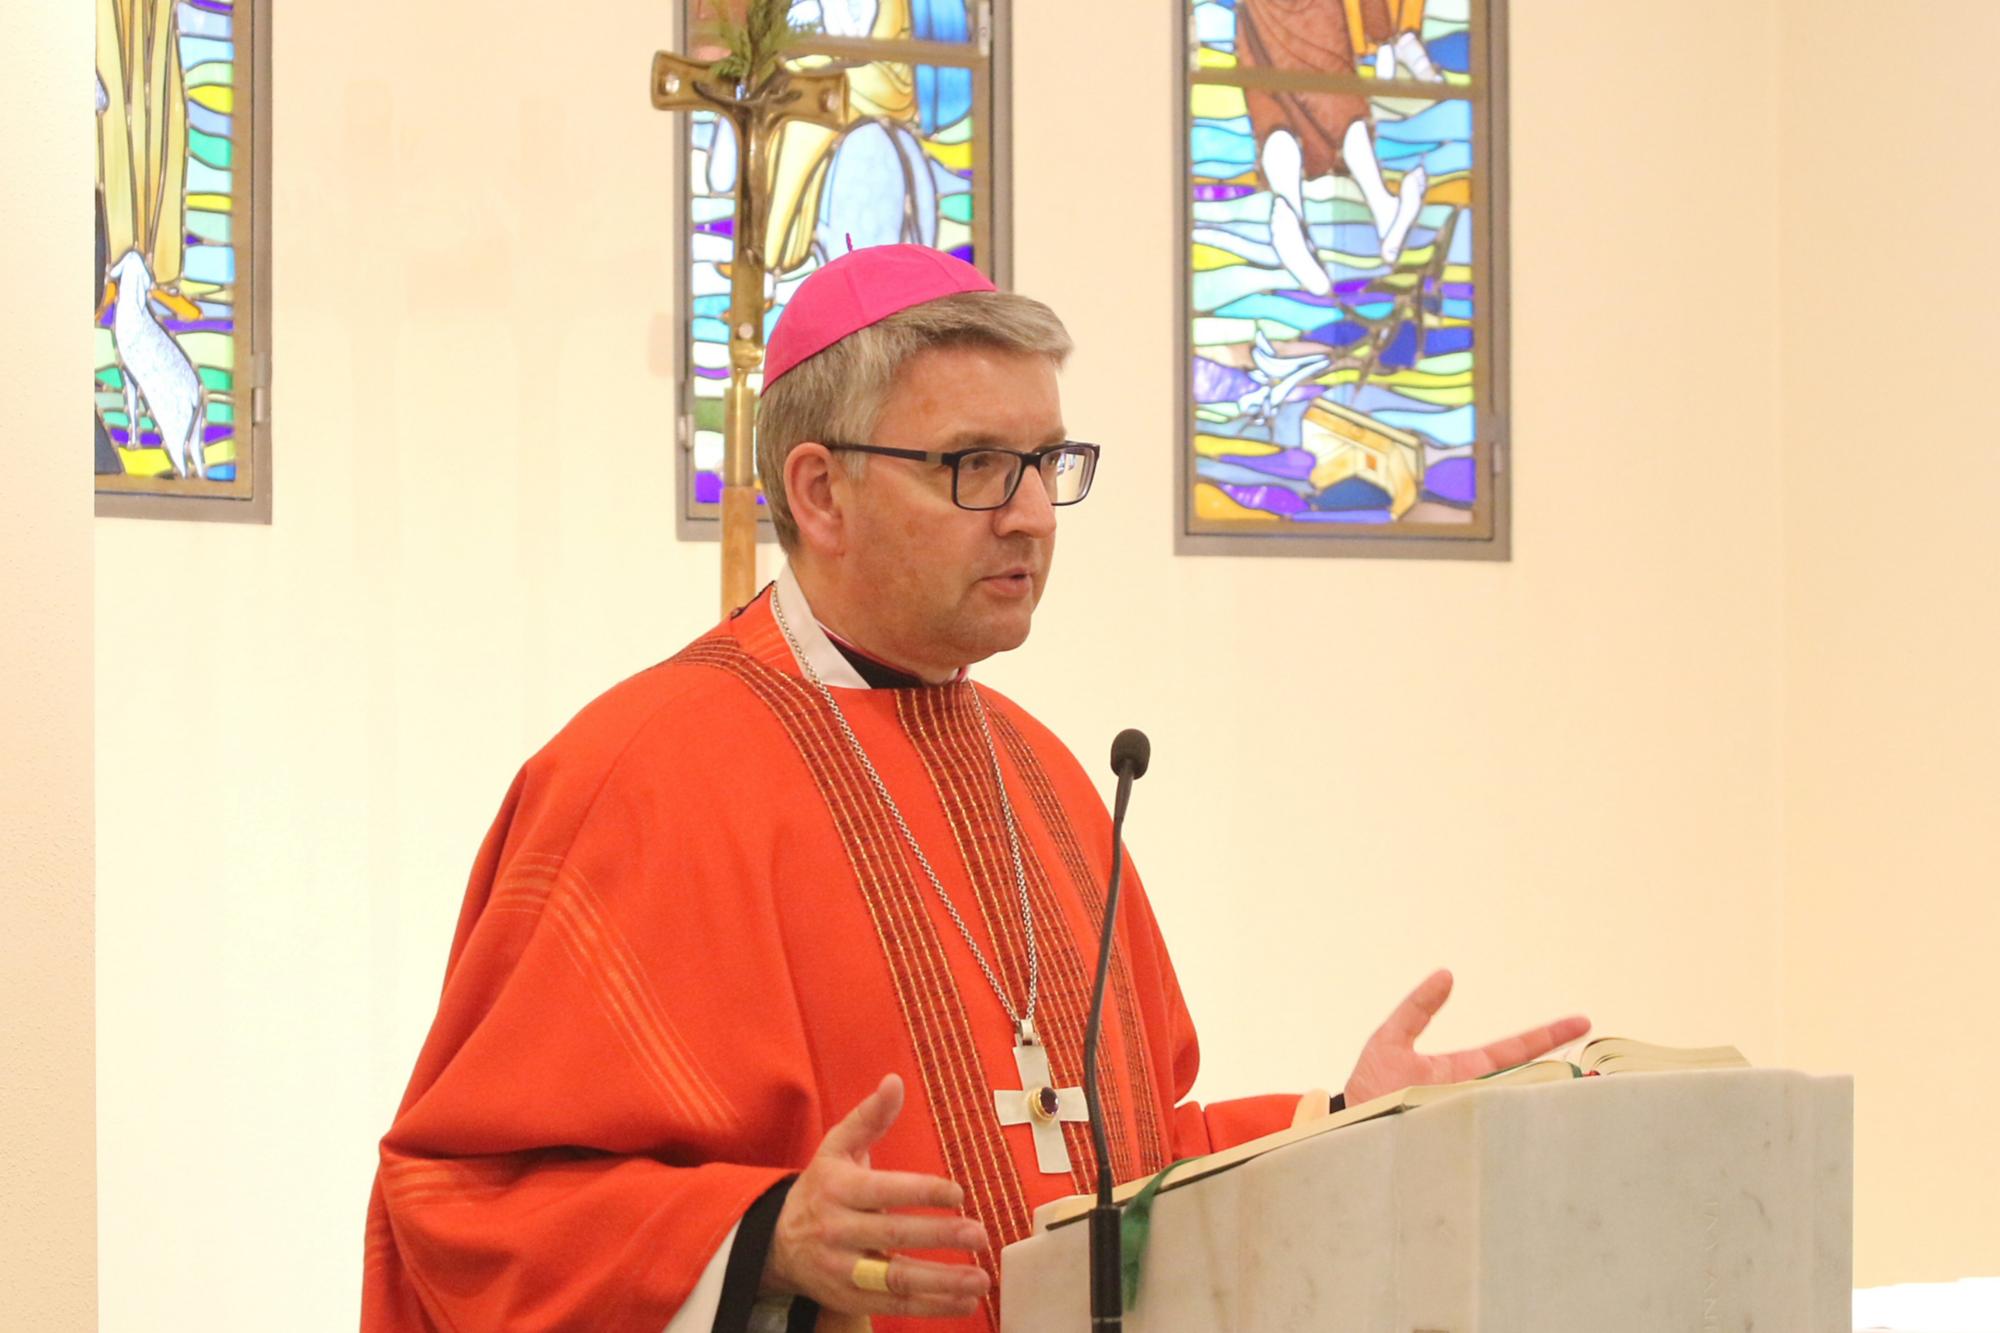 Darmstadt, 3. Mai 2019: Bischof Peter Kohlgraf würdigte die Arbeit des Katholischen Bildungszentrums NR 30 in Darmstadt.